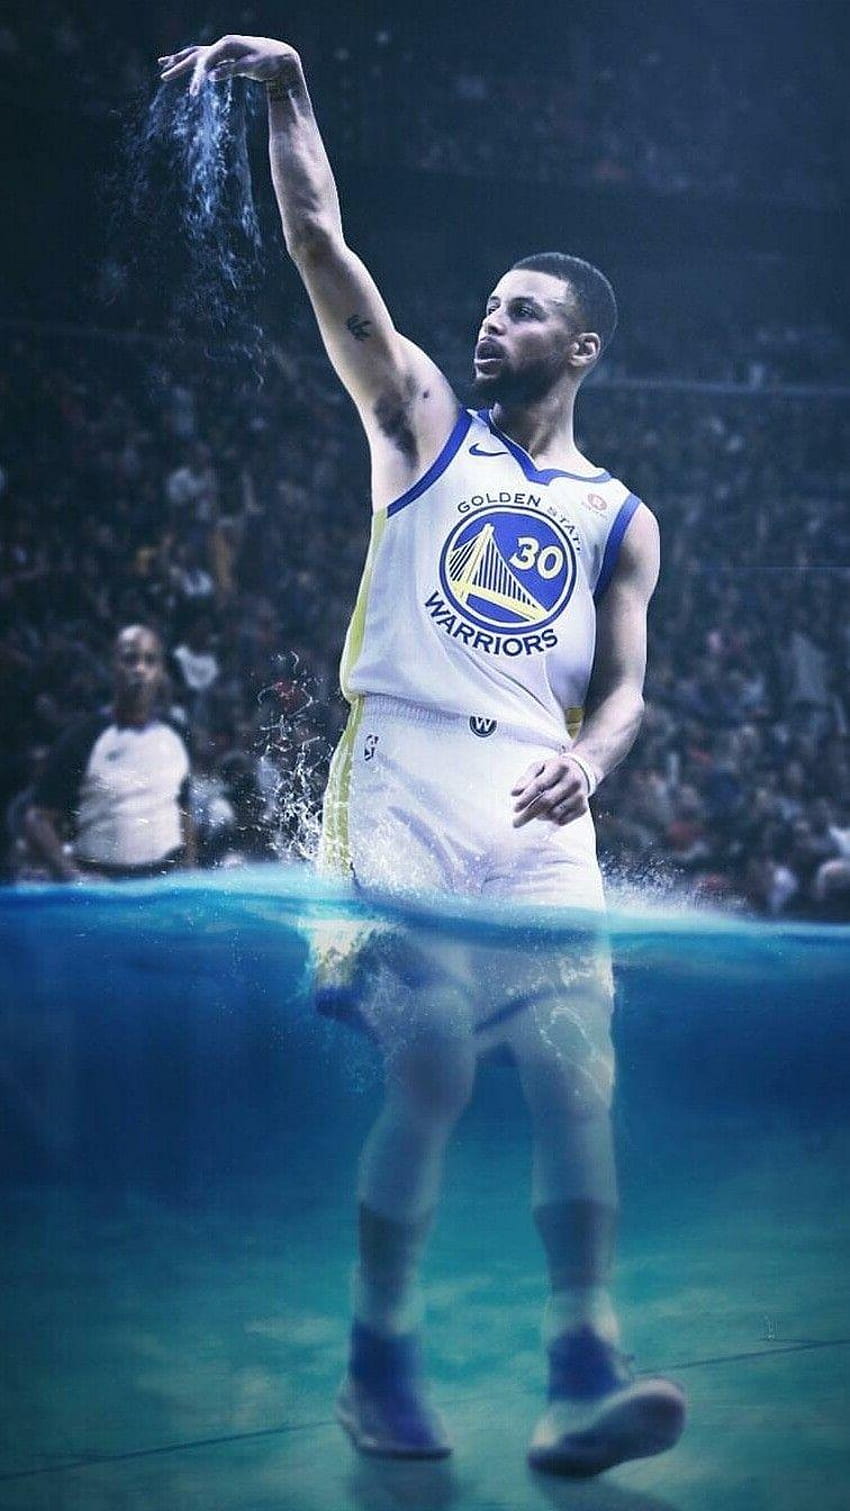 HD wallpaper Basketball Stephen Curry Golden State Warriors NBA   Wallpaper Flare